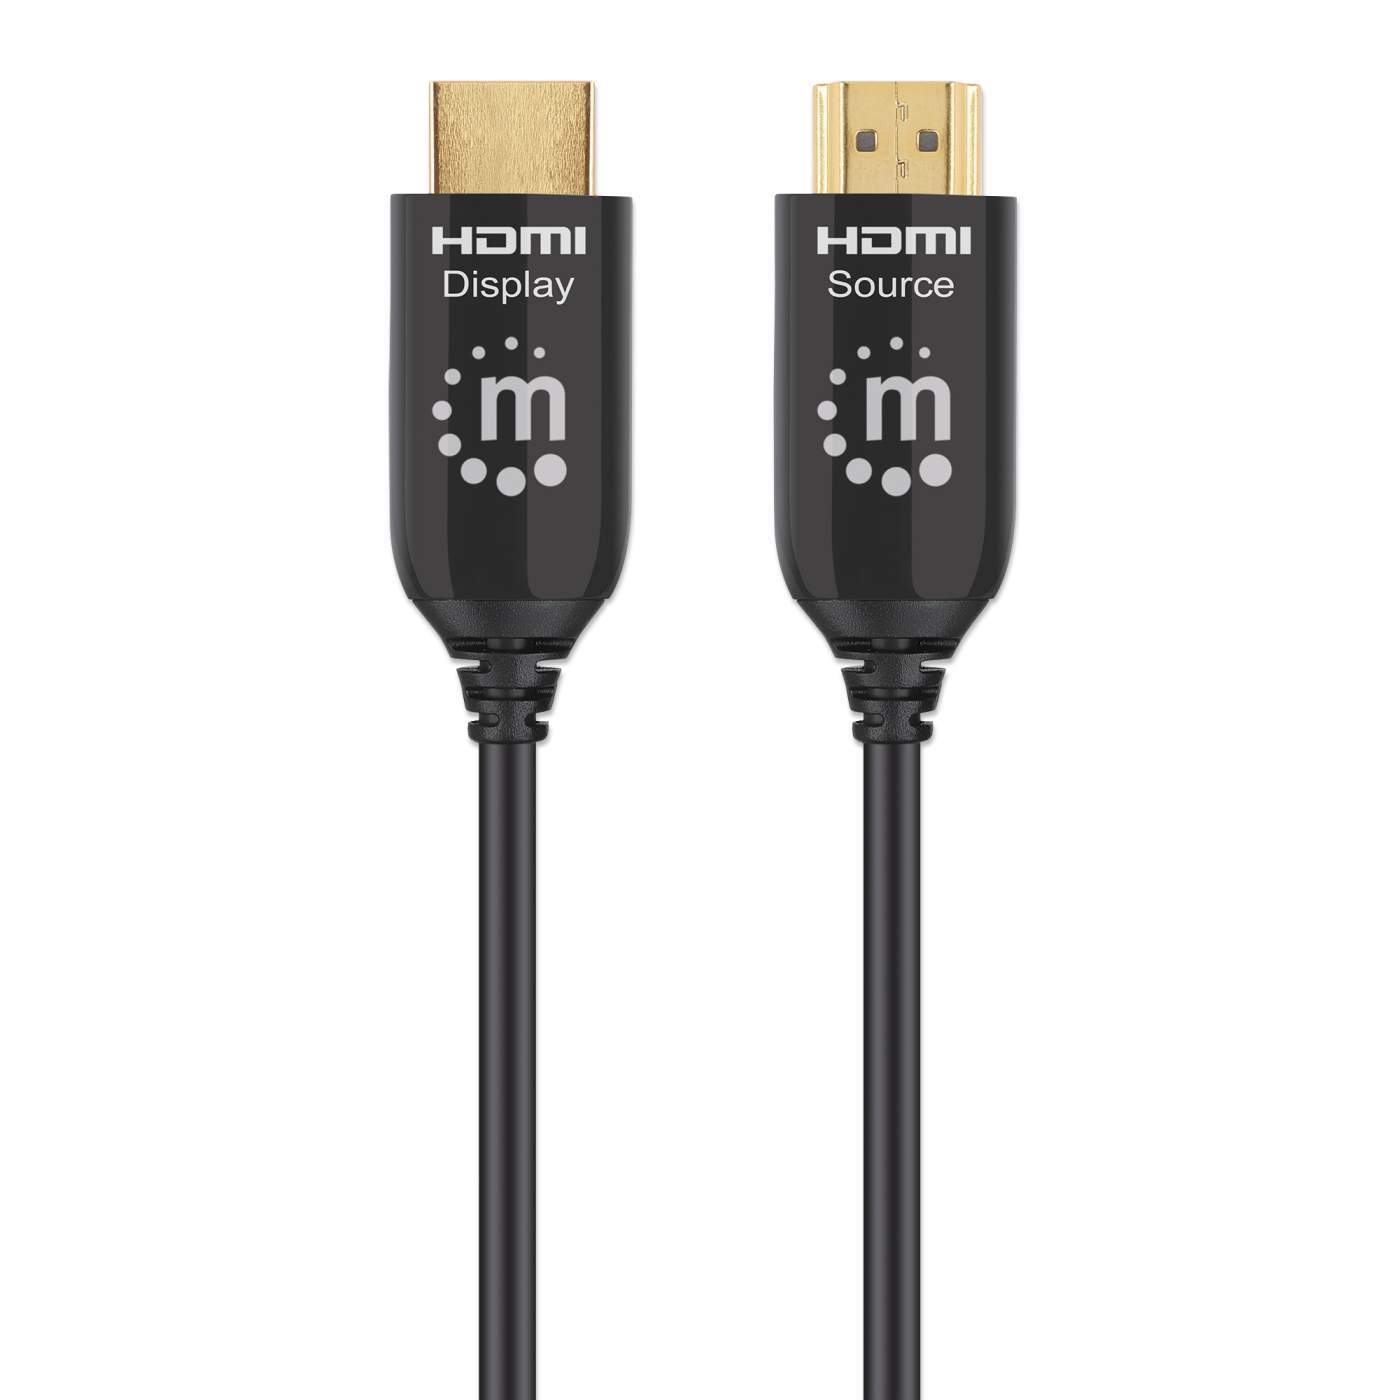 Ototon® 15M Câble HDMI 4K 60Hz Coudé 90 Degrés Cordon HDMI Ultra HD High  Speed 18Gbps par Ethernet Supporte HDR 3D Arc - 15M